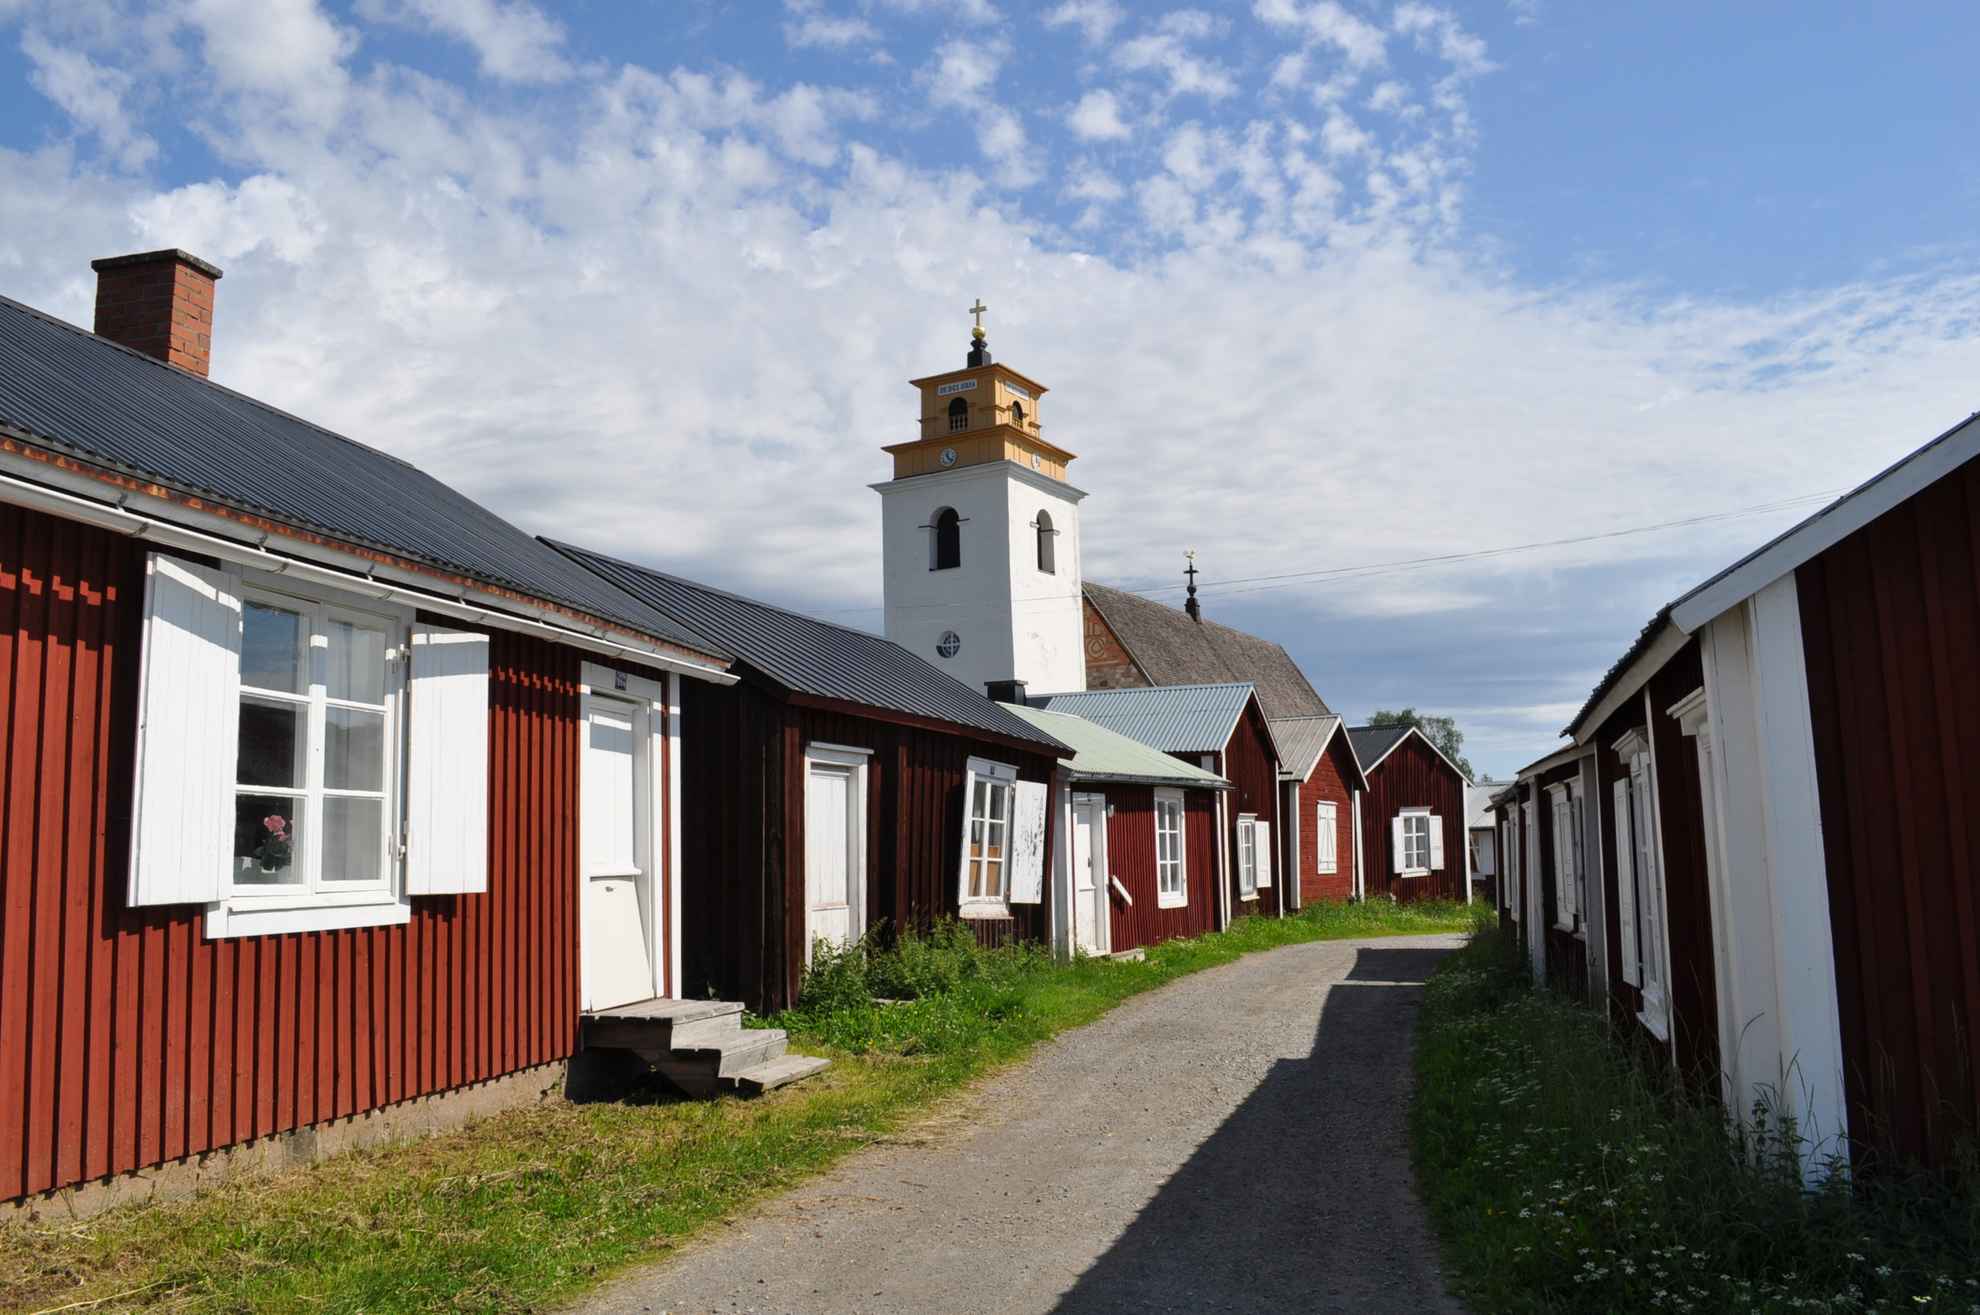 Gammelstad Church Town in northern Sweden